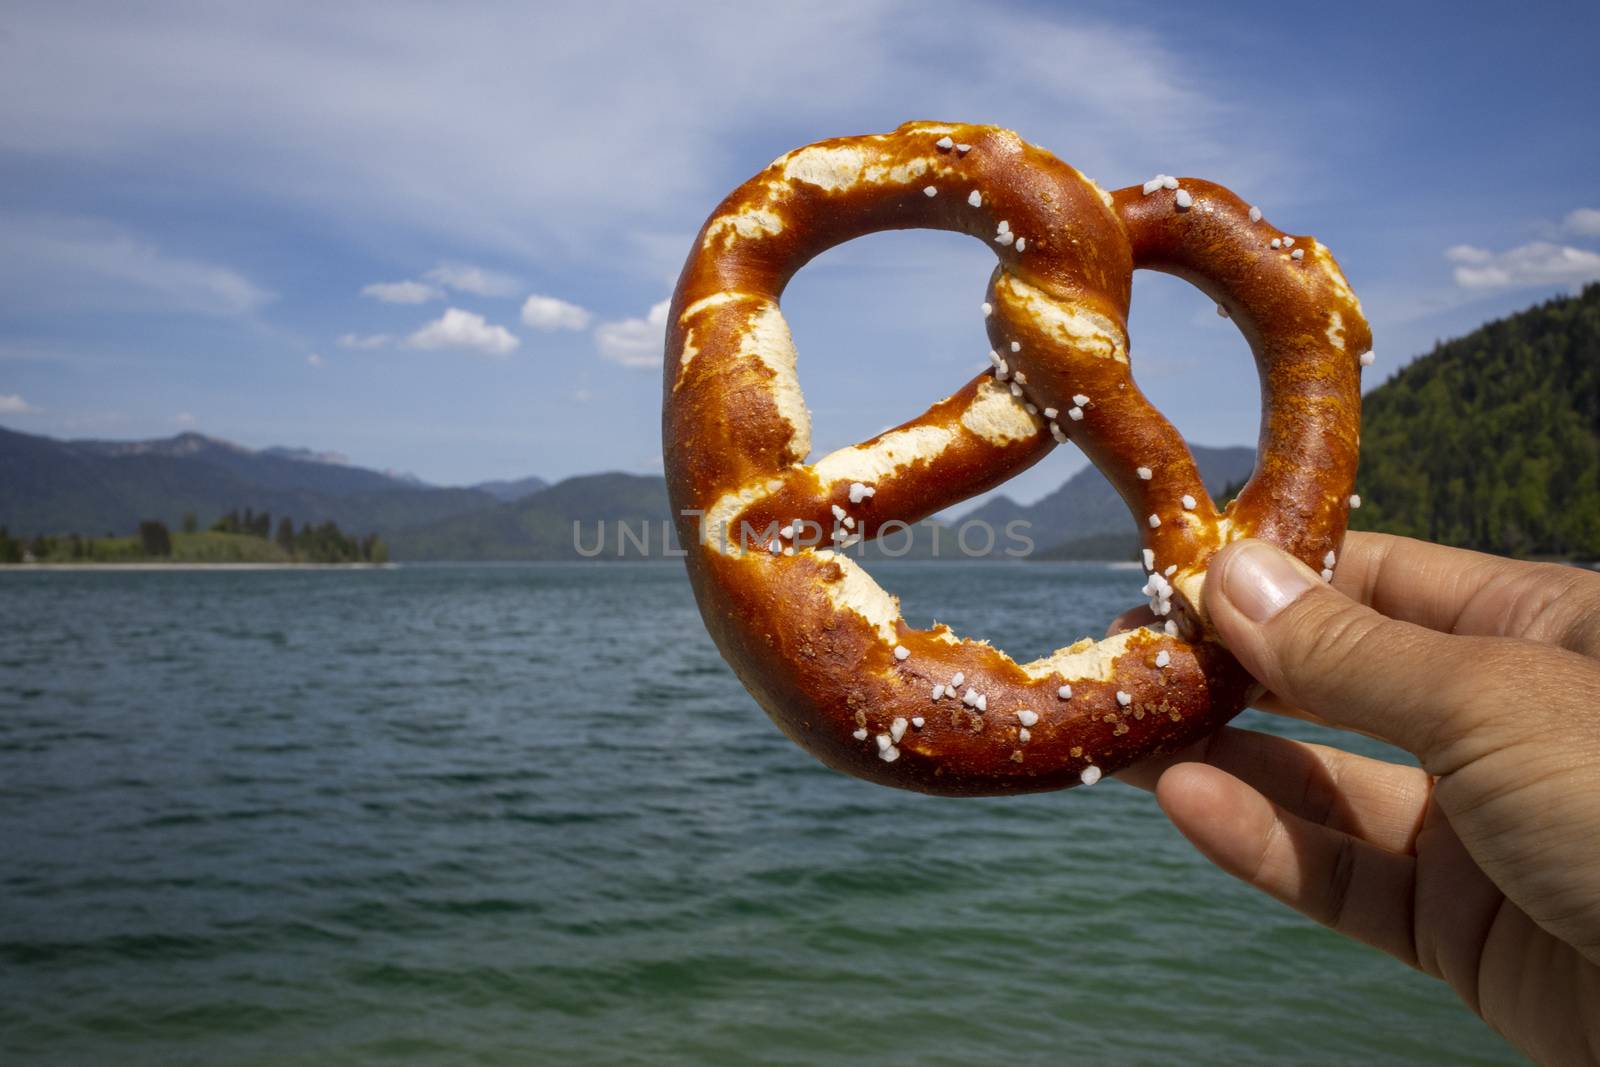 pretzel at Walchensee by bernjuer